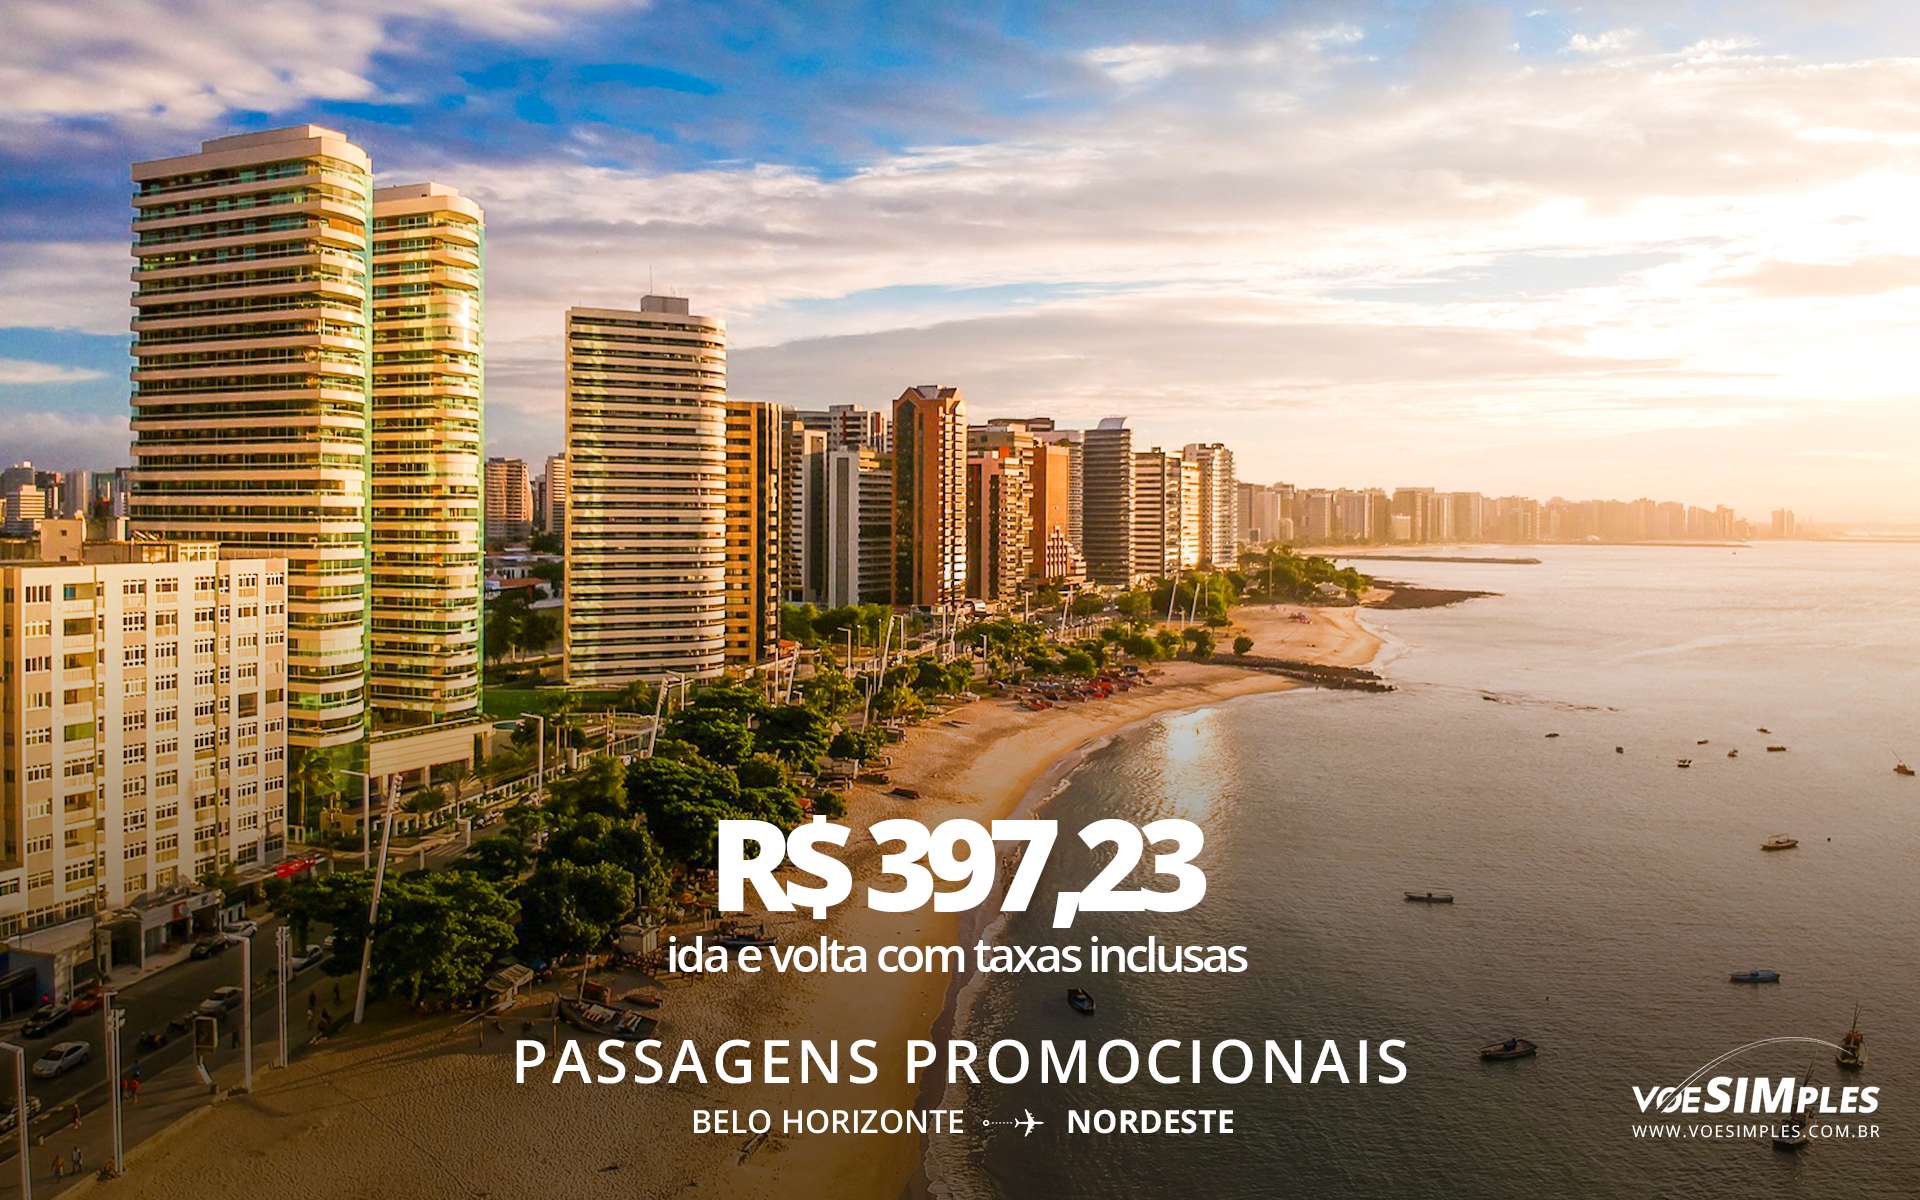 Passagens aéreas Nordeste! Saindo de Belo Horizonte | Voe Simples